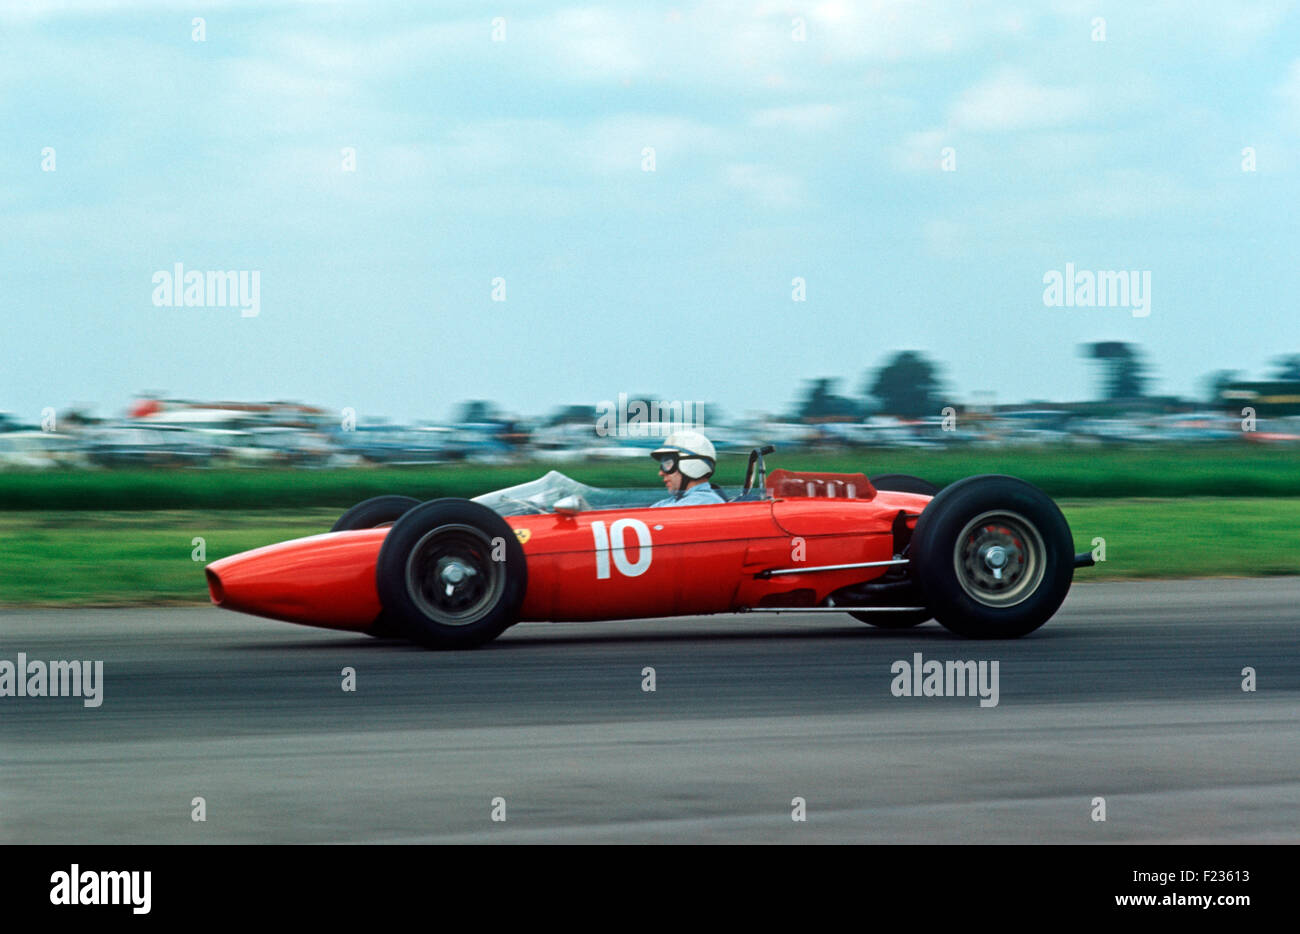 N° 10 John Surtees dans sa Ferrari, a terminé 2e British GP, 20 juillet 1963 à Silverstone Banque D'Images